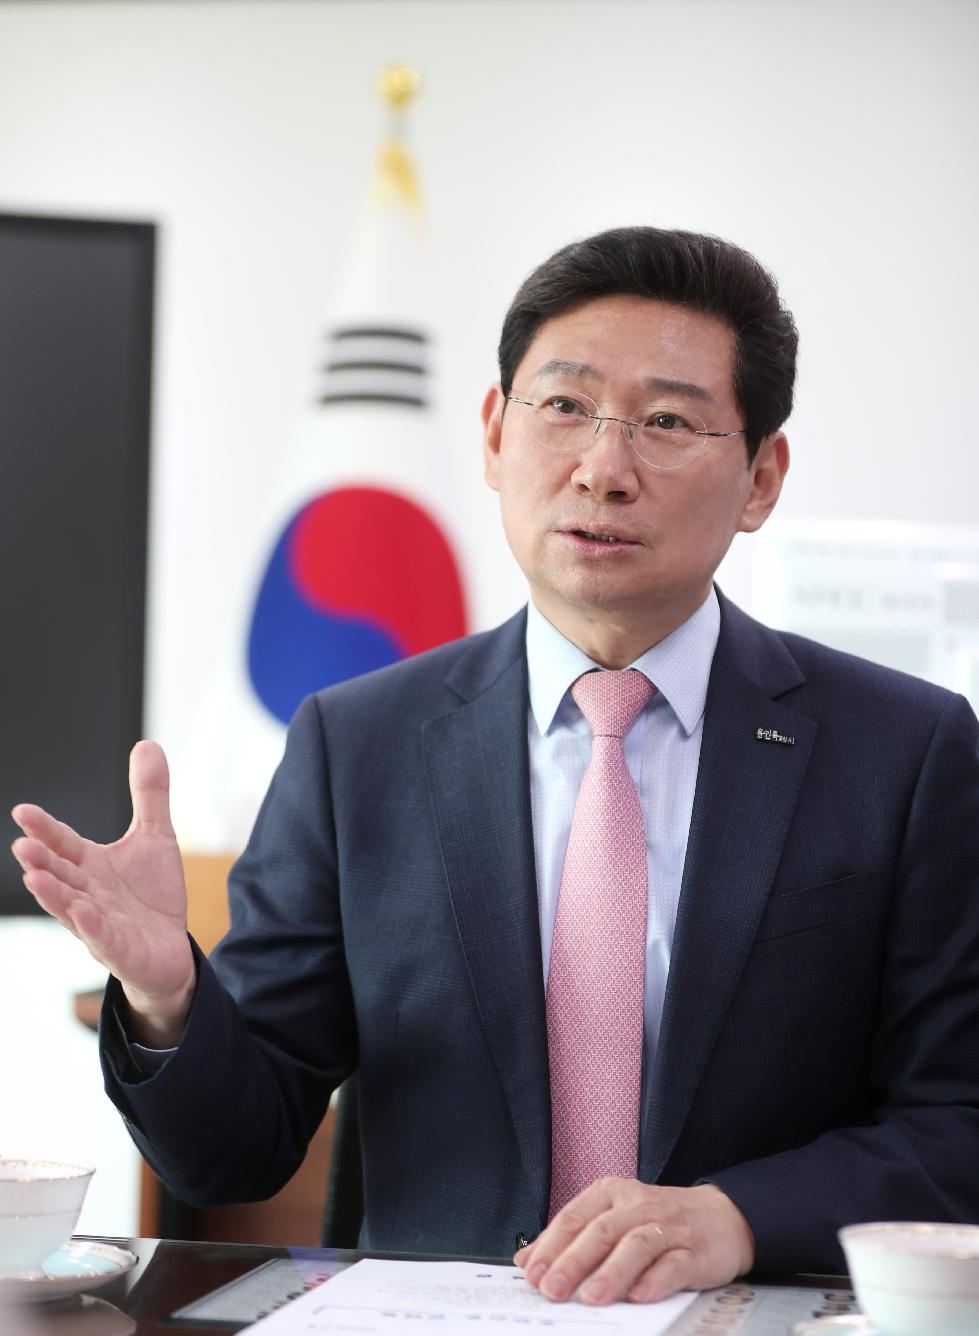 이상일 용인시장, 박상우 국토교통부 장관에 용인 발전을 위한 정부 지원 요청